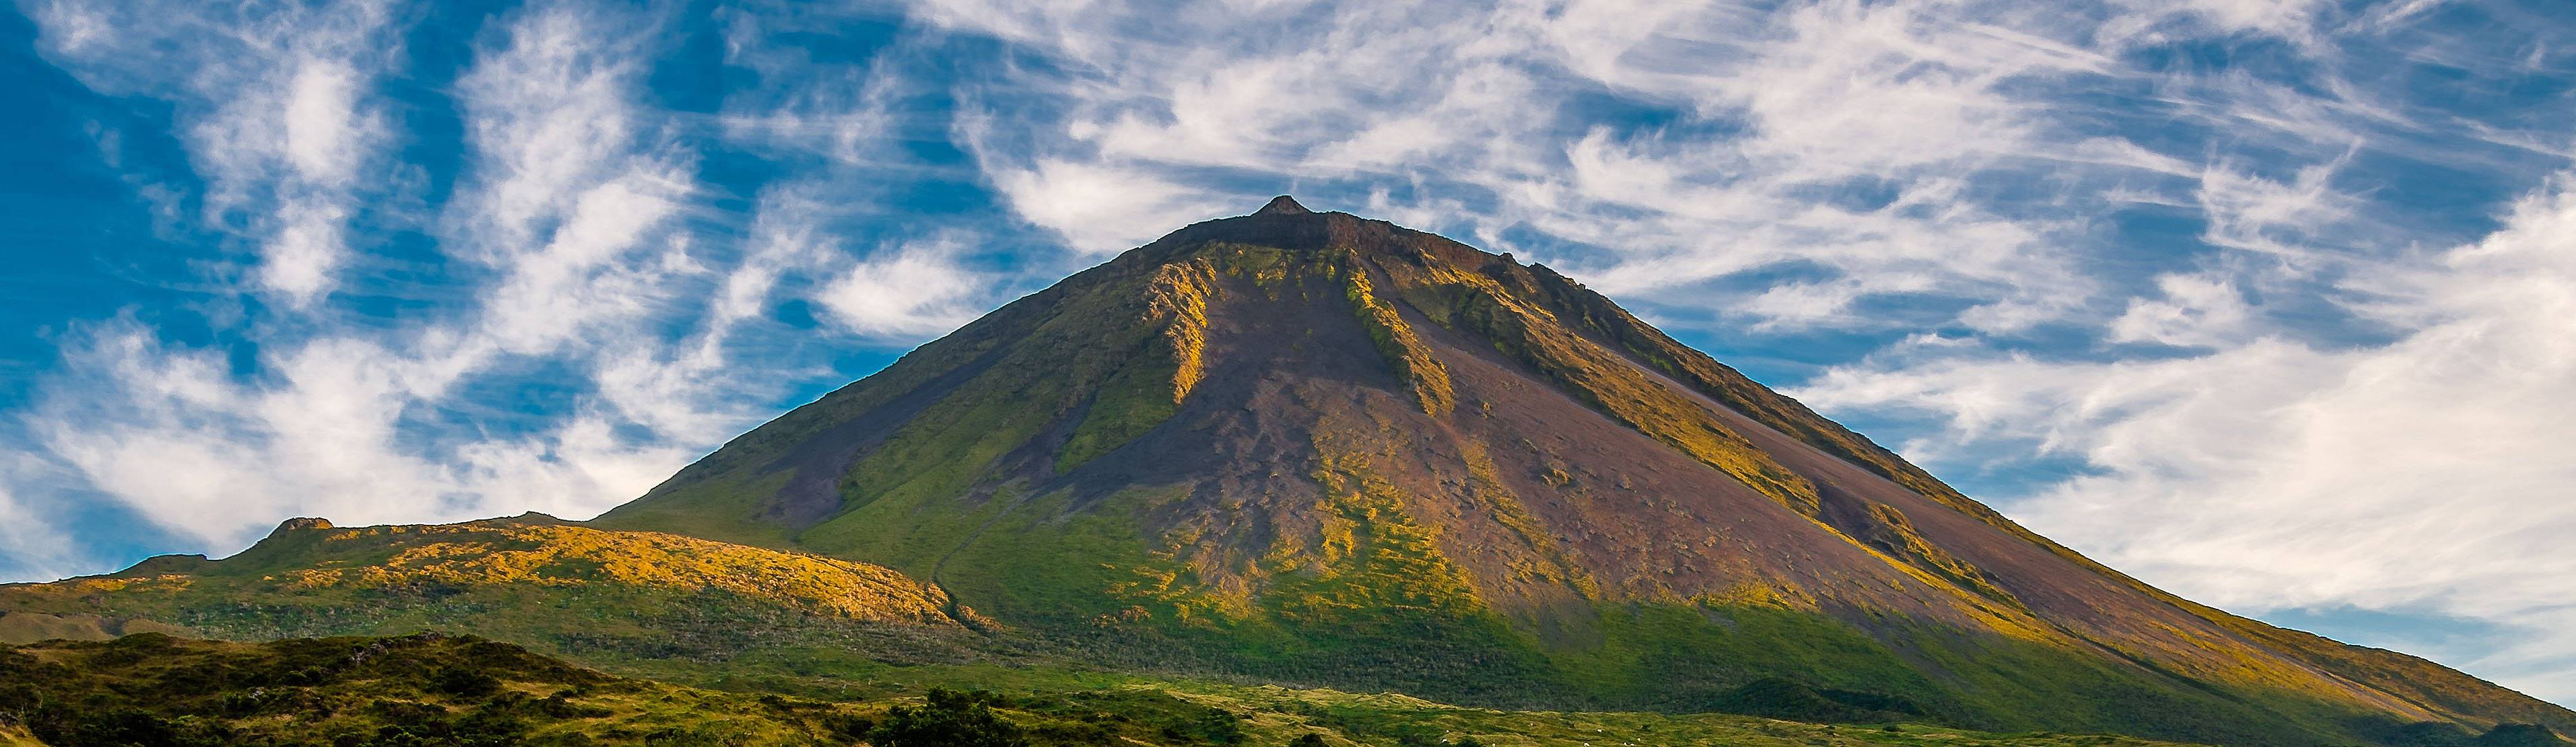 Le volcan Pico, Les Açores